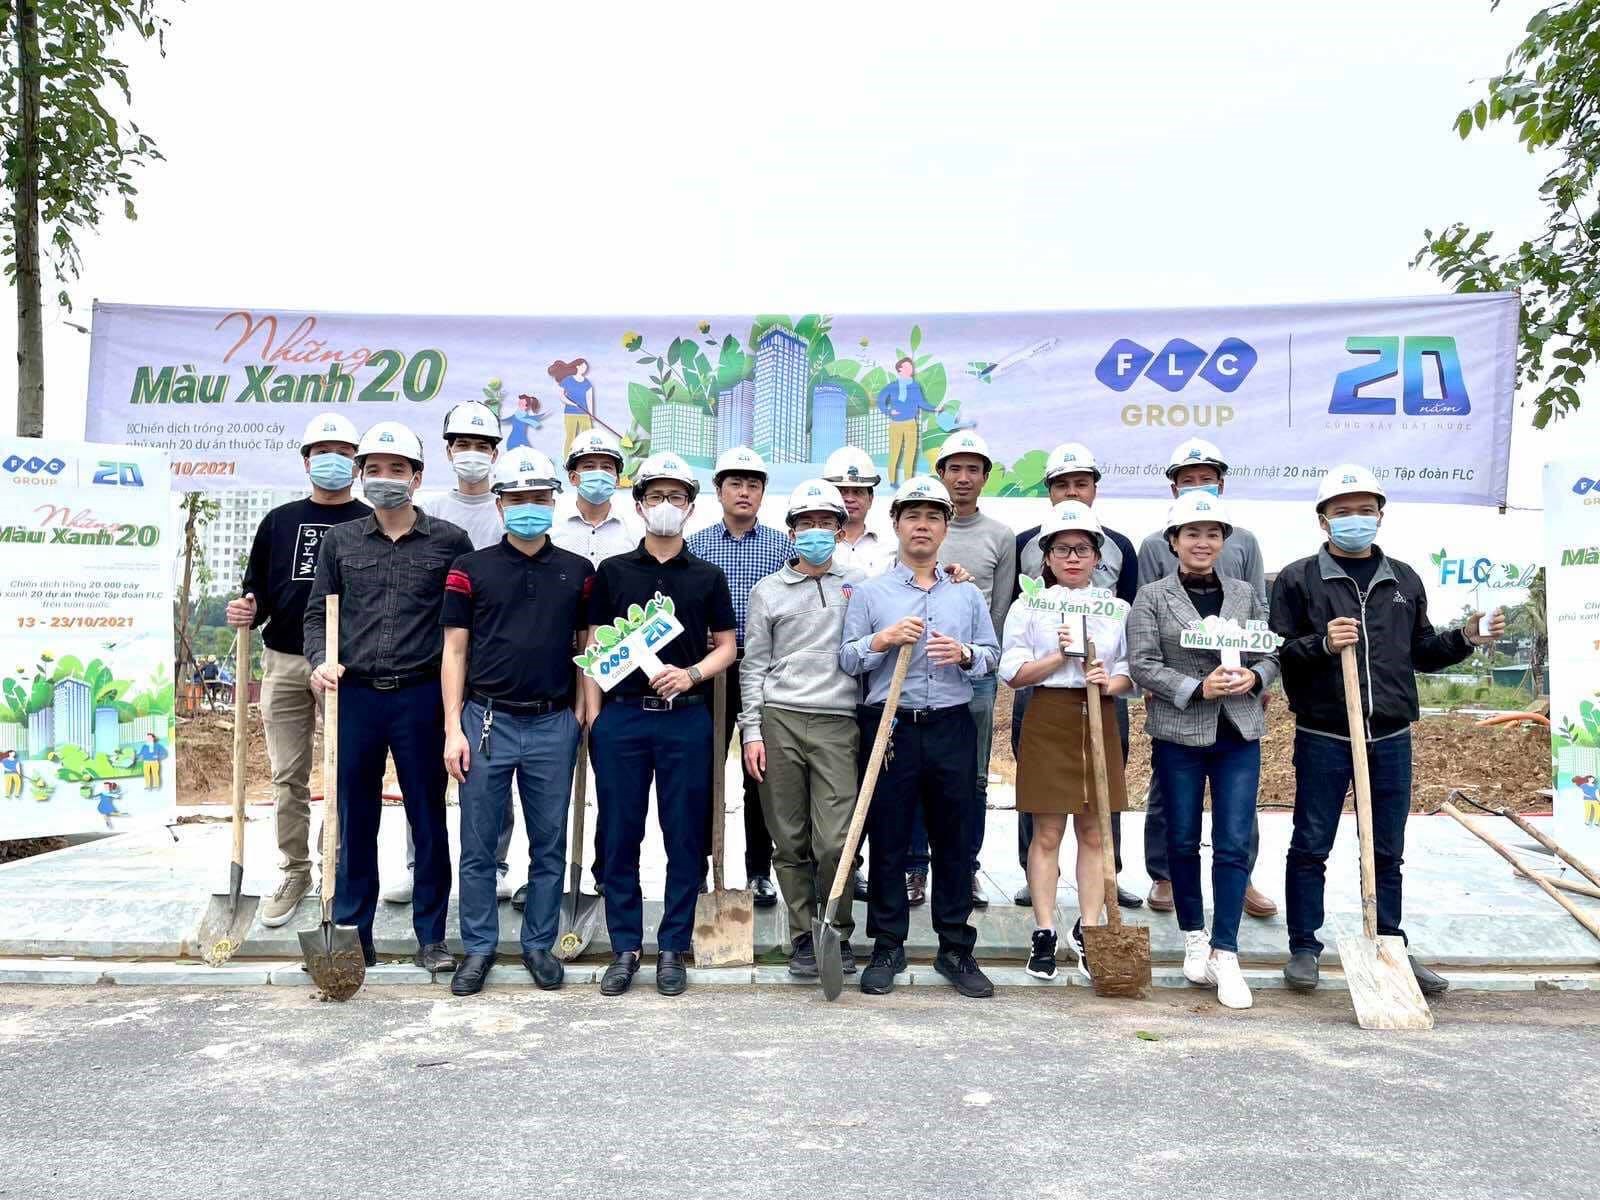 Hoạt động trồng cây được triển khai tại FLC Quảng Bình hưởng ứng chương trình “Những màu xanh 20” của Tập đoàn